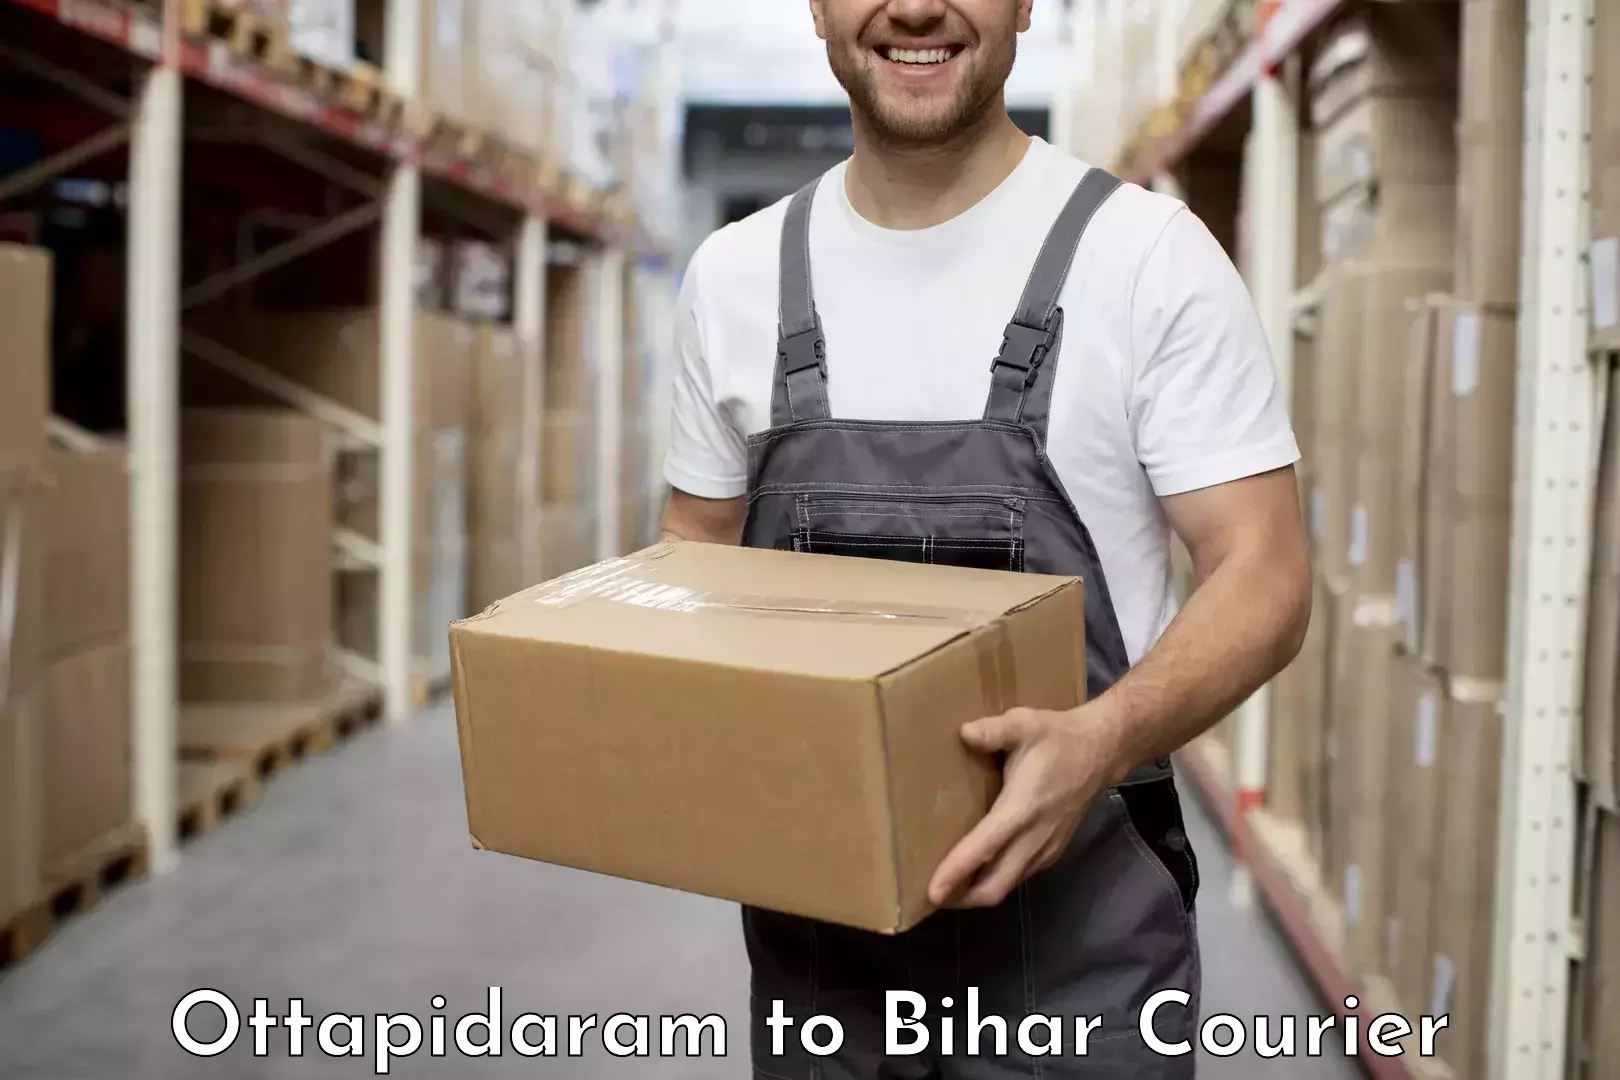 Courier service innovation Ottapidaram to Bhagalpur